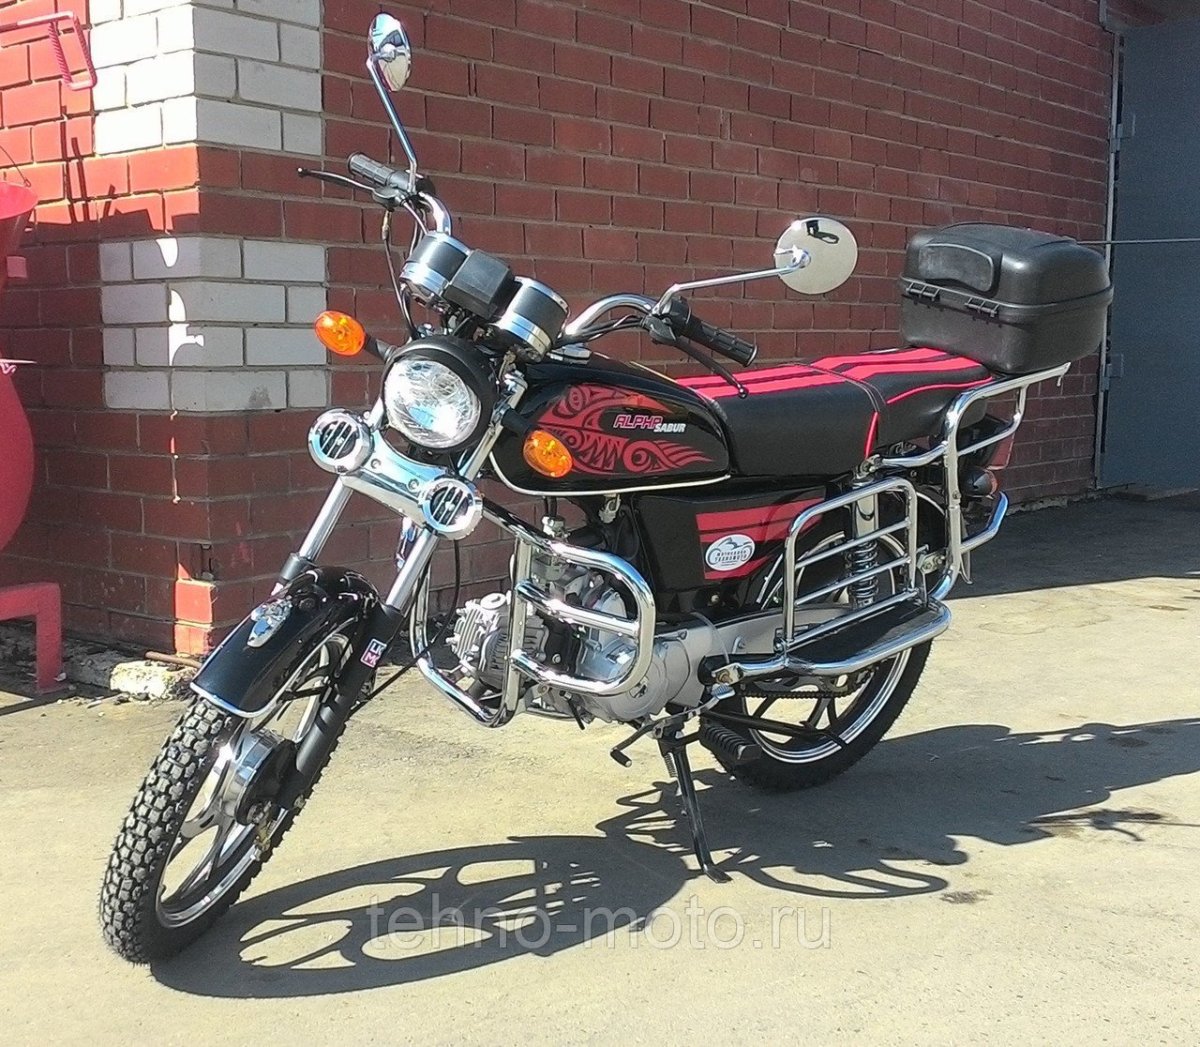 Альфа мотоцикл 7000